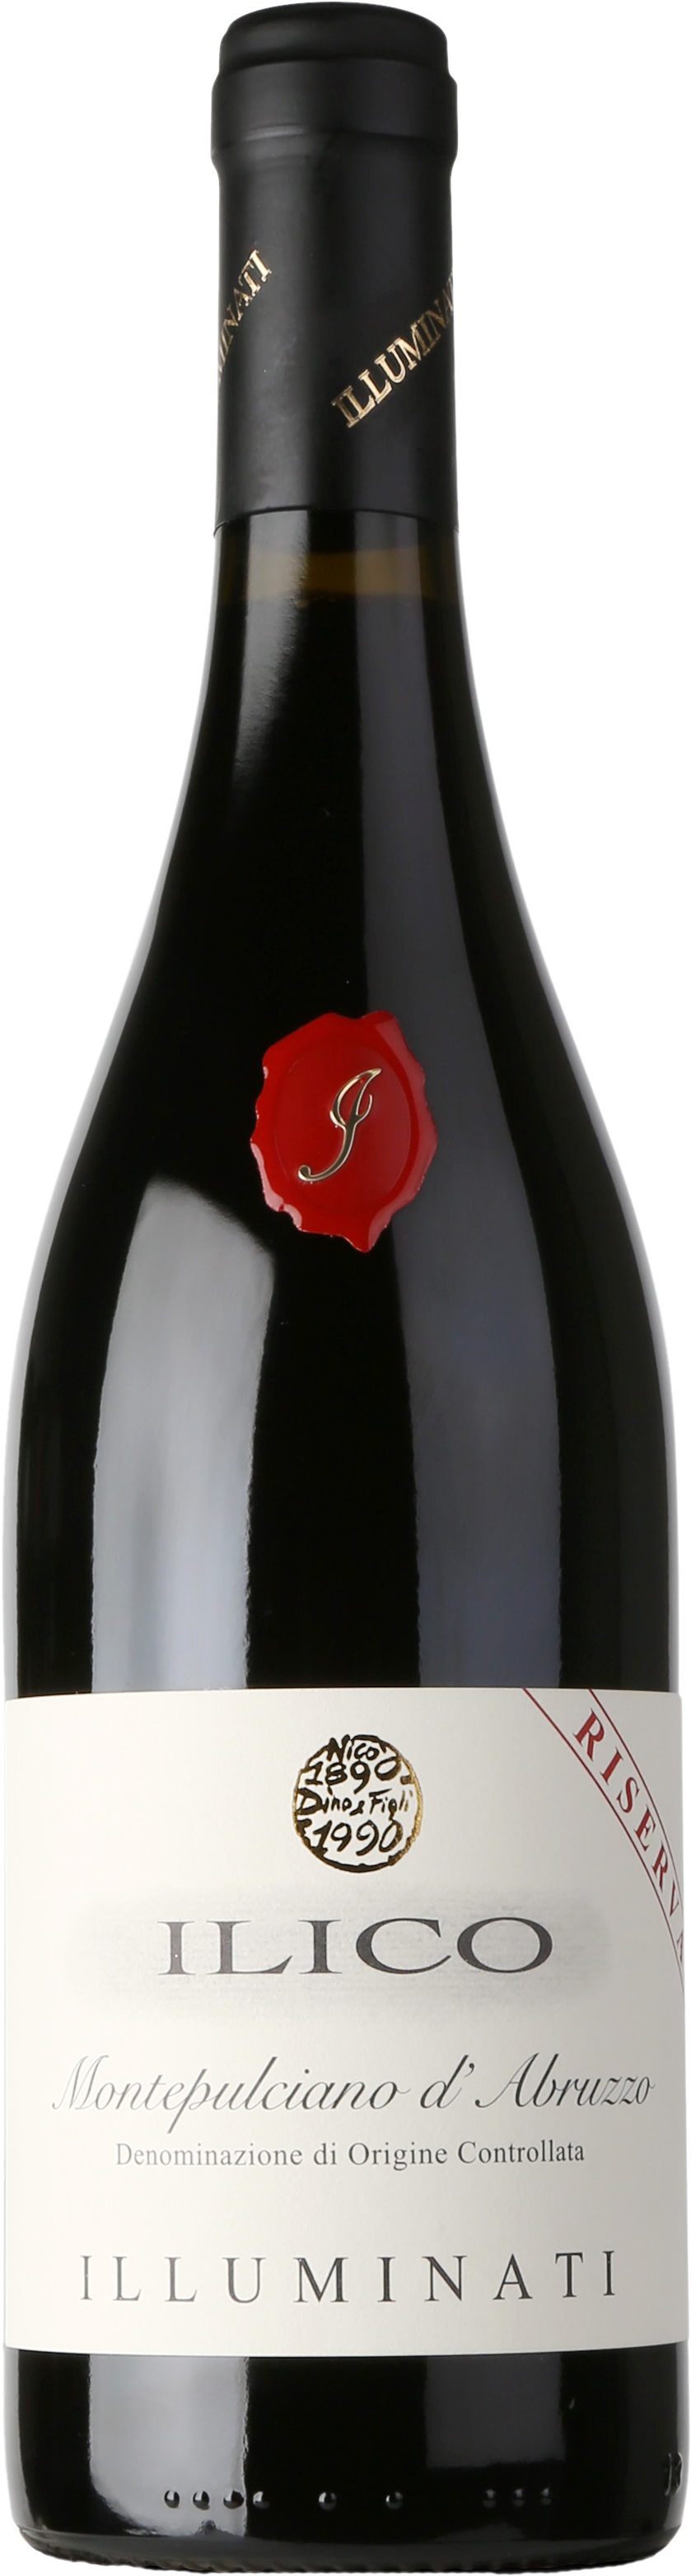 Montepulciano D'abruzzo Doc Riserva 'ilico' - Martin Ray Sonoma County Pinot Noir Clipart (899x3196), Png Download